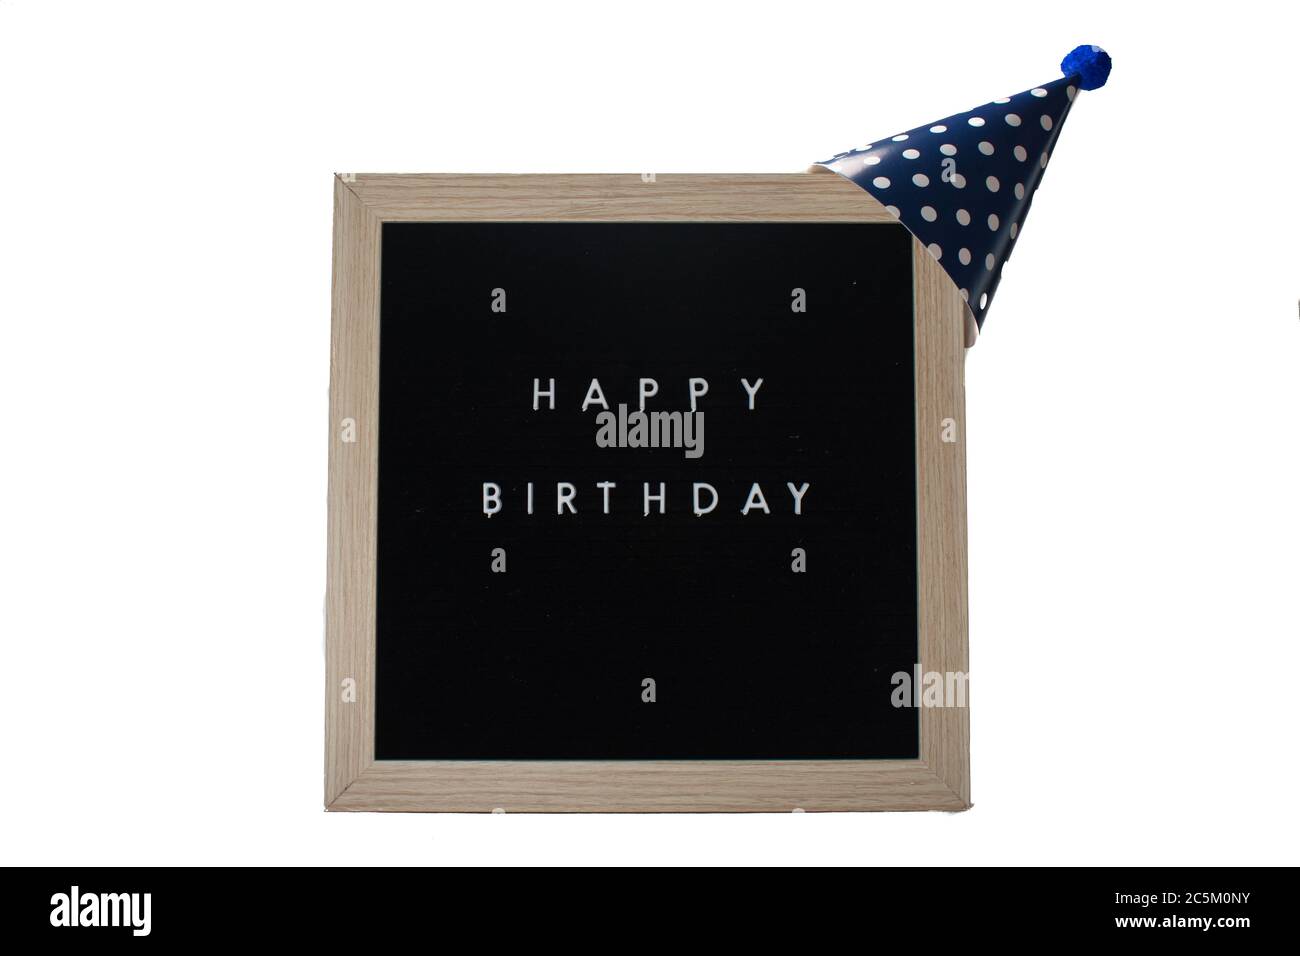 Ein schwarzes Schild mit Birkenrahmen, der alles gute zum Geburtstag sagt, mit einem dunkelblauen Hut mit Polka-Punkten und einem blauen Baumwollball auf dem Oberteil auf einem rein weißen Rücken Stockfoto